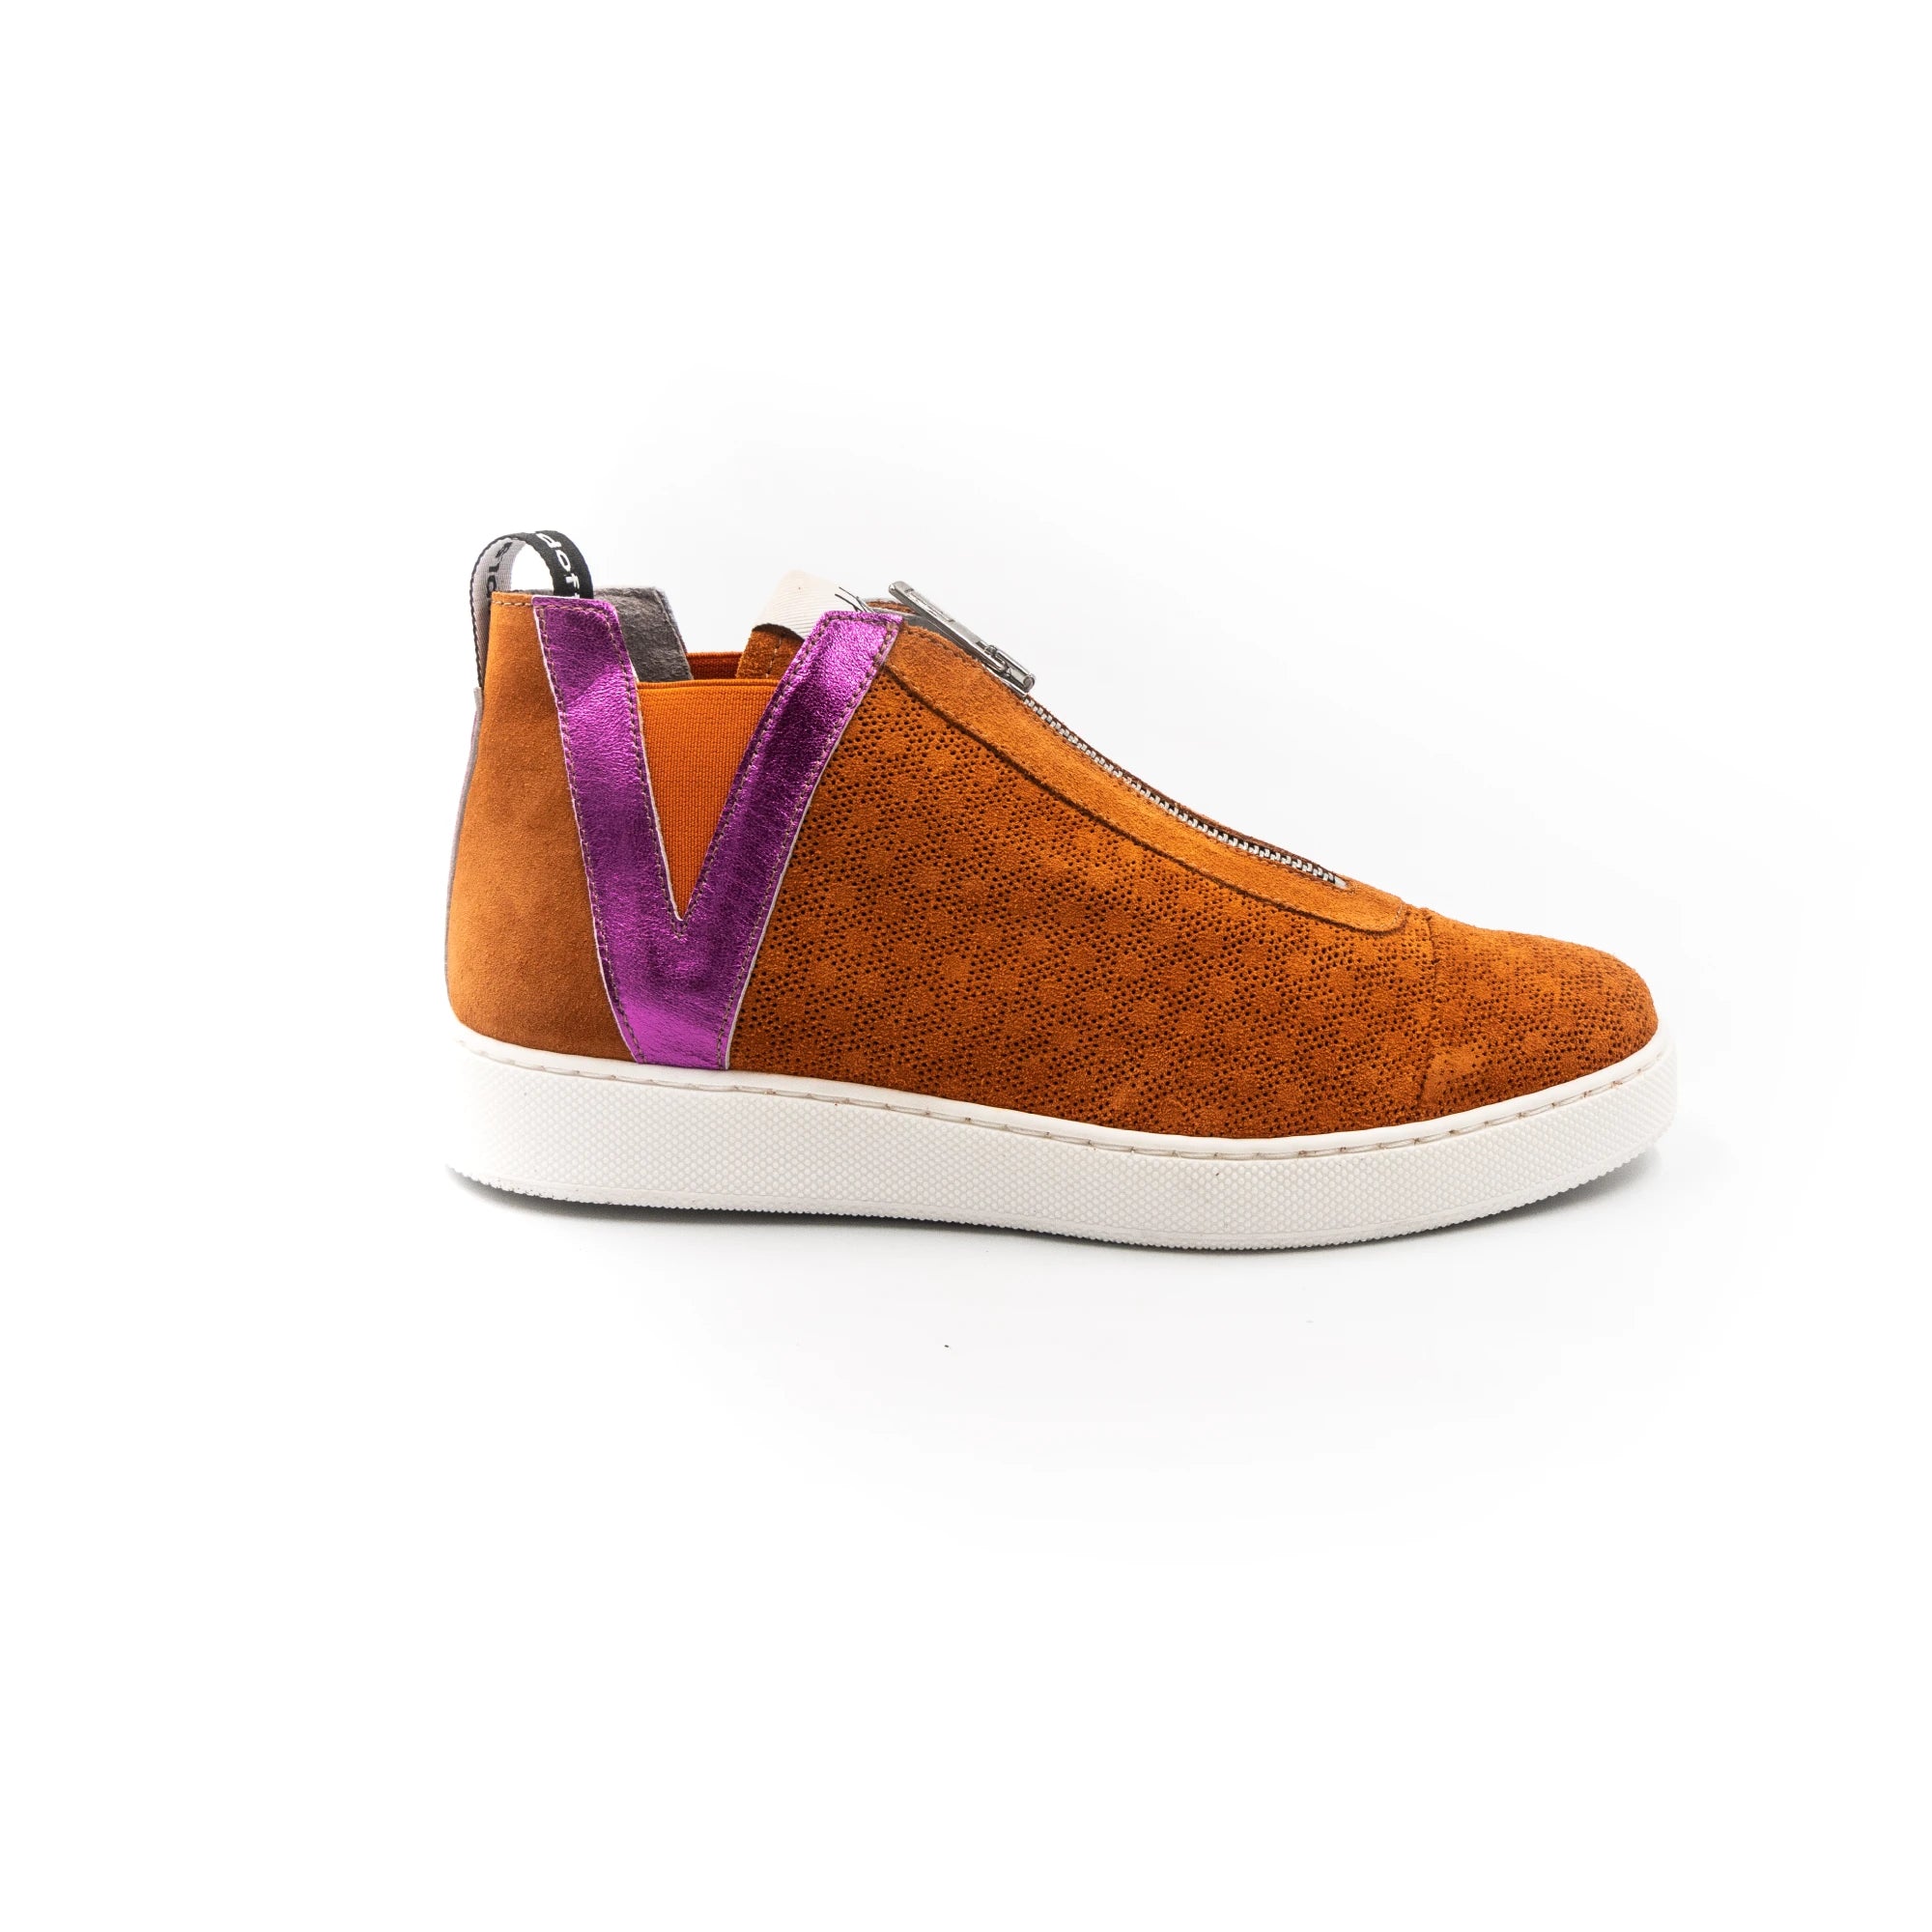 Sneakers with zipper, in orange.